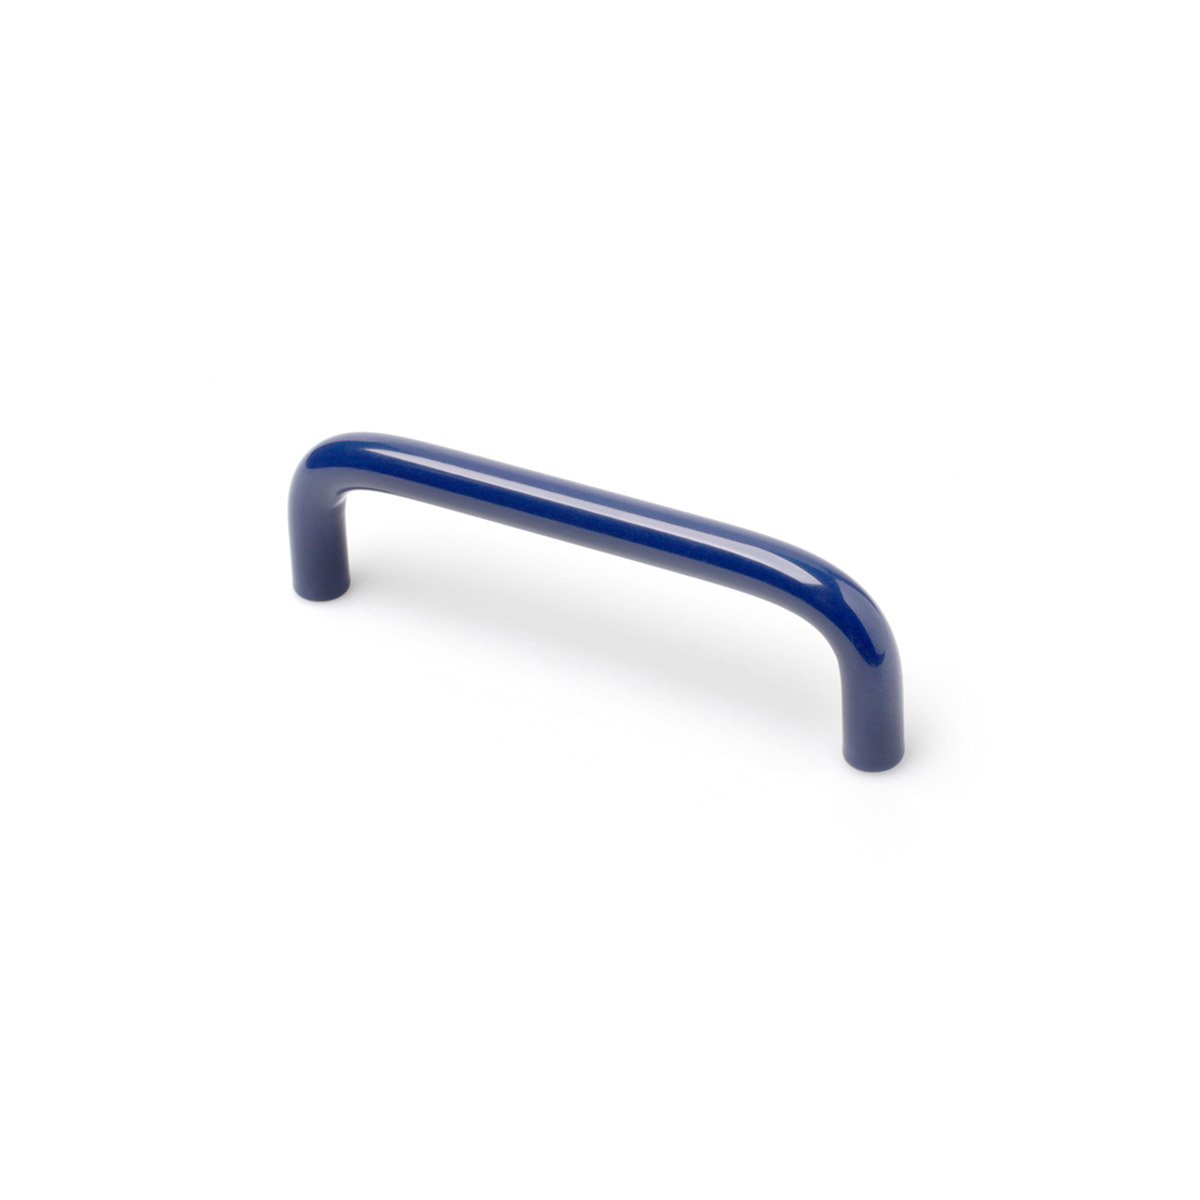 Asa de hierro con acabado azul, dimensiones:106x10x30mm y entrepuntos:96mm